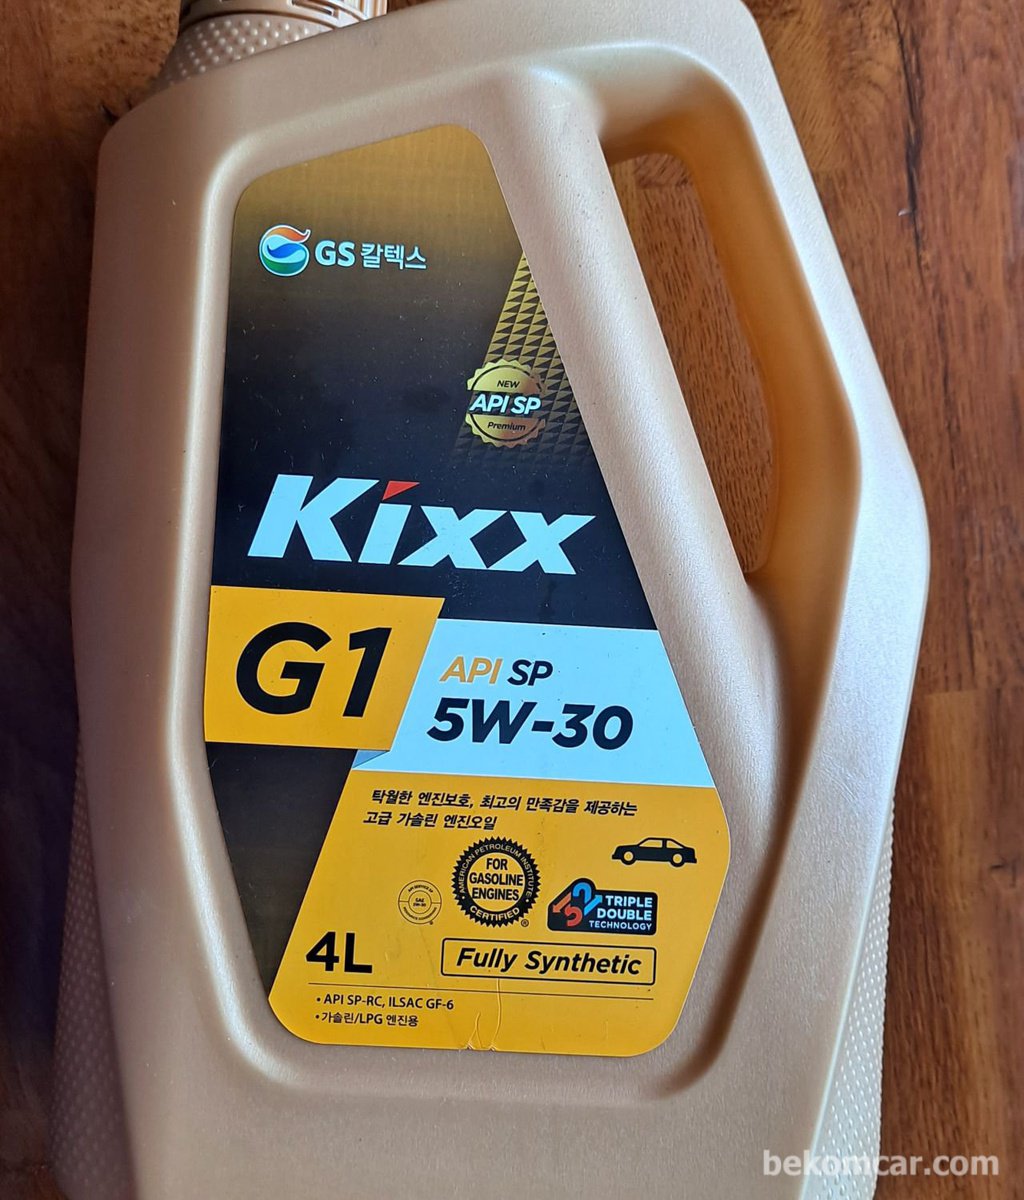 Kixx engine oil with API SP & ILSAC GF-6 for gasoline & lpg engines|bekomcar.com